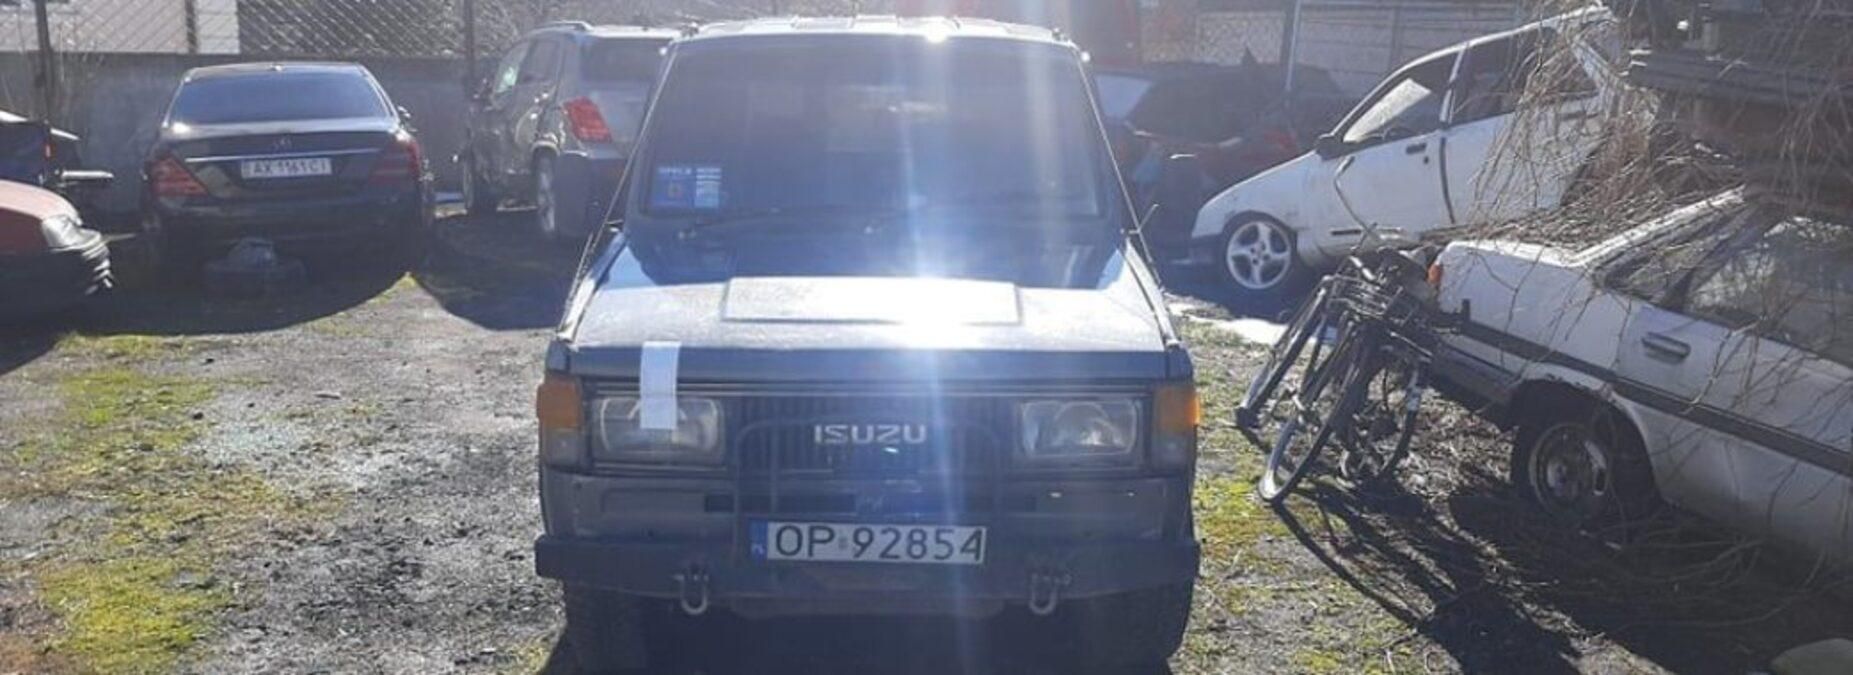 На Львовщине правоохранители с недействительными документами забрали авто у местного активиста: видео 